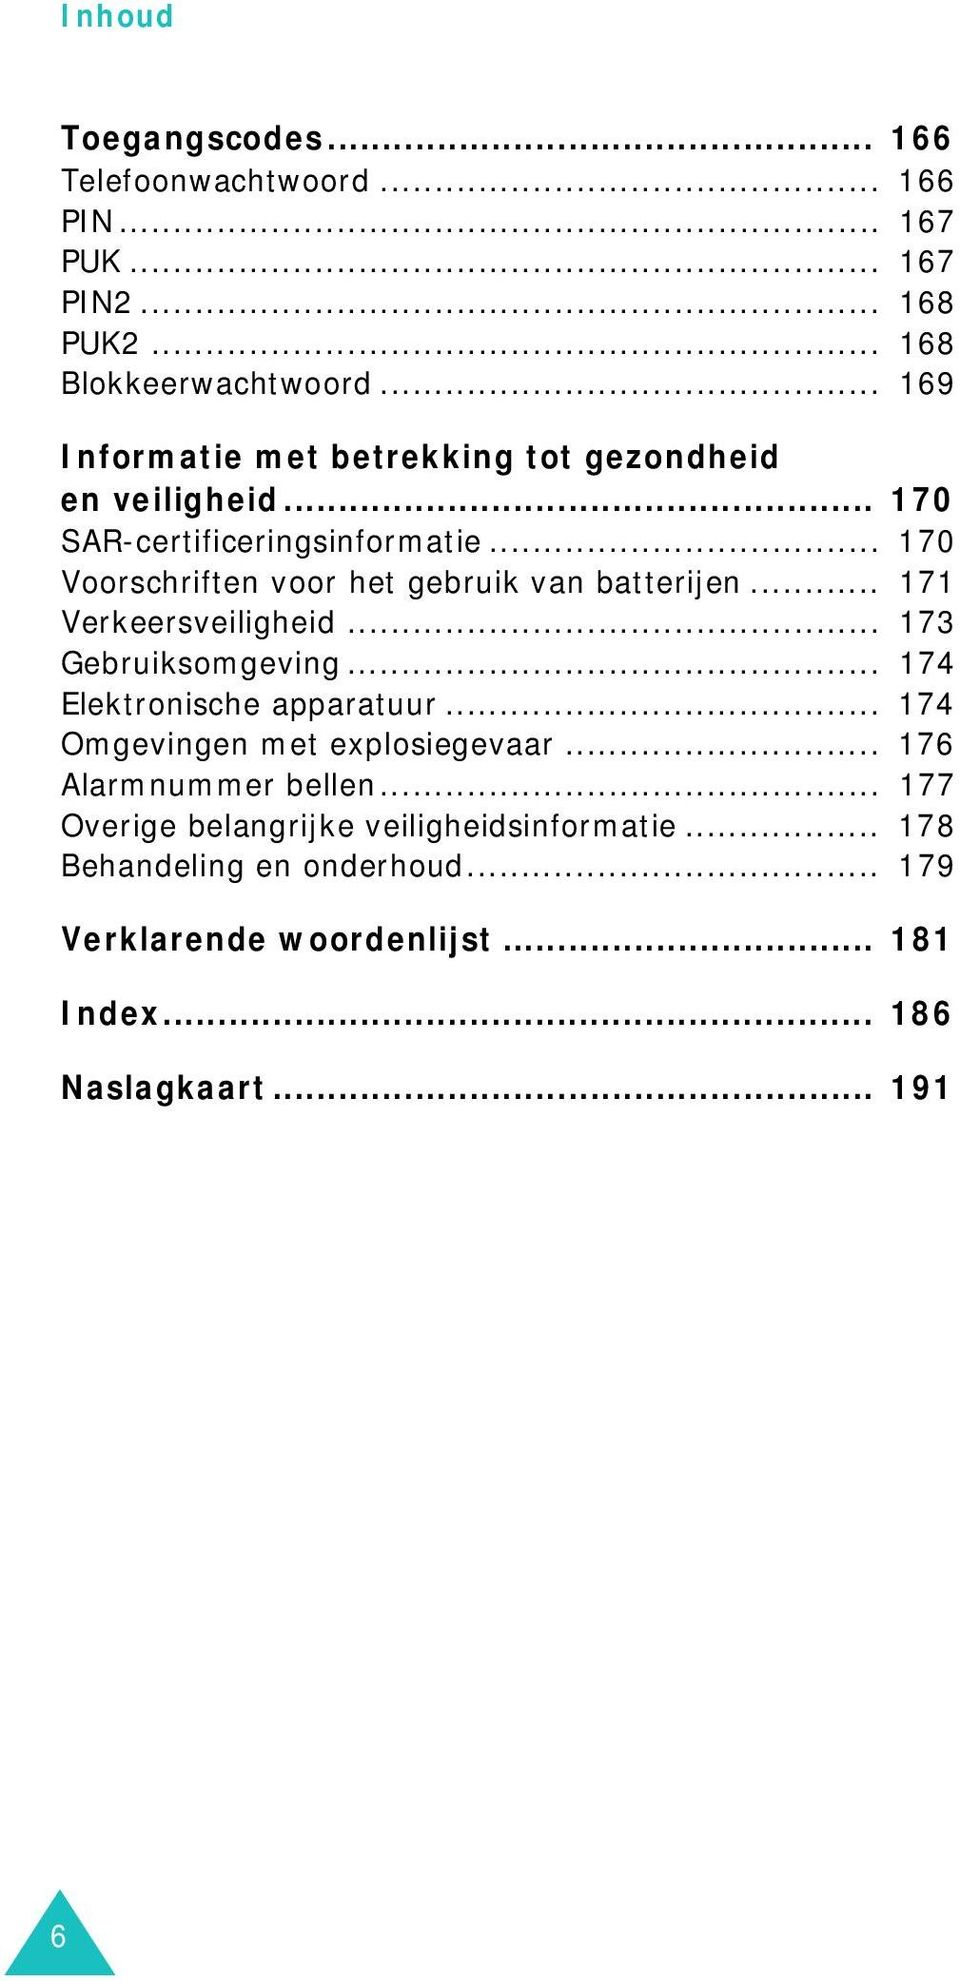 .. 170 Voorschriften voor het gebruik van batterijen... 171 Verkeersveiligheid... 173 Gebruiksomgeving... 174 Elektronische apparatuur.